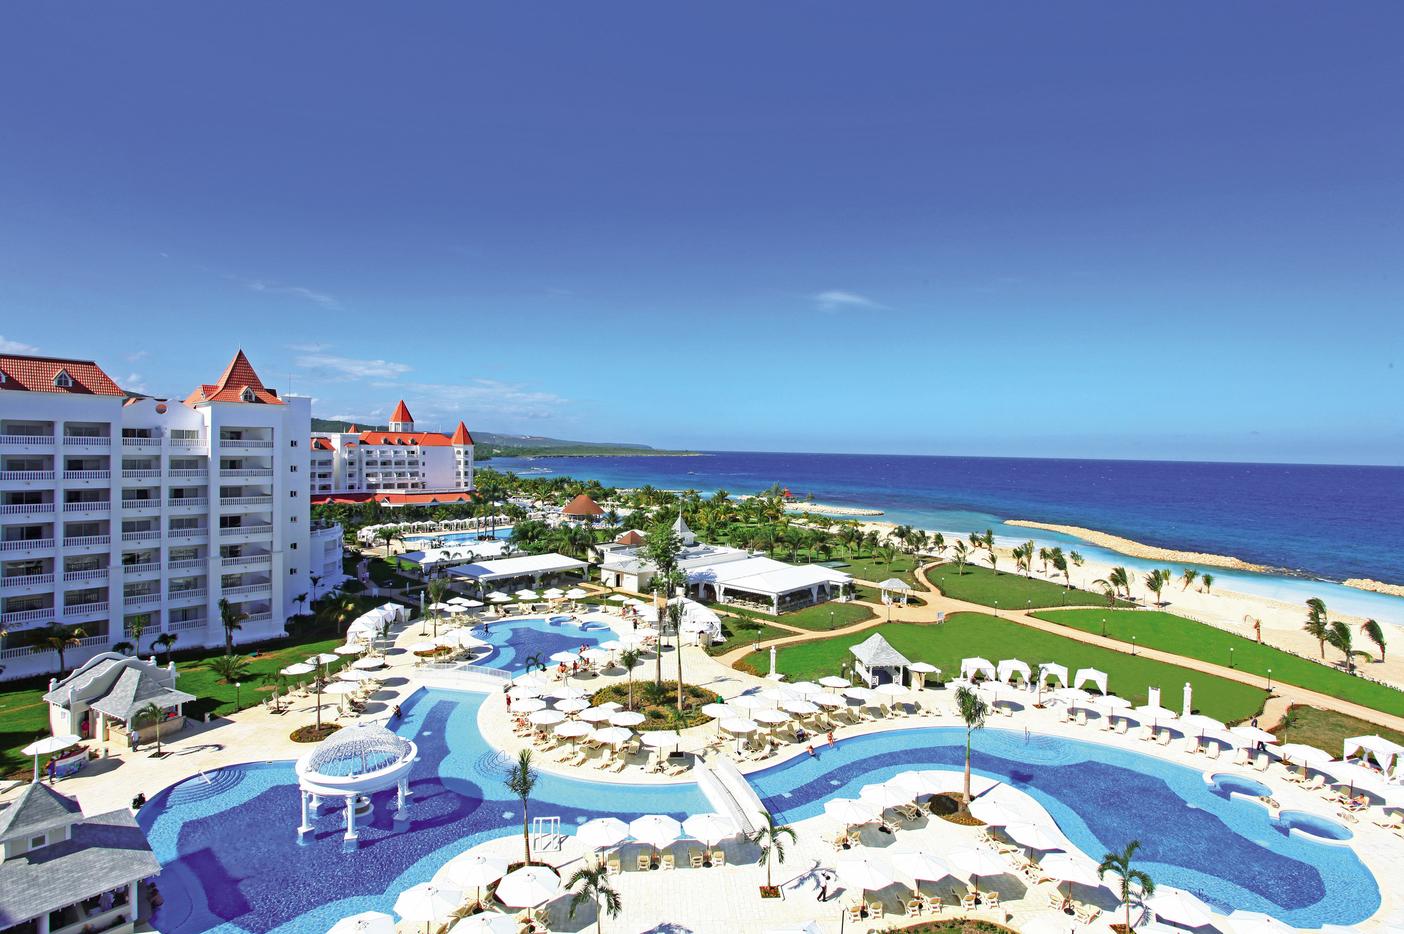 Experience sunny pools and lagoons at Bahia Principe Hotels & Resorts